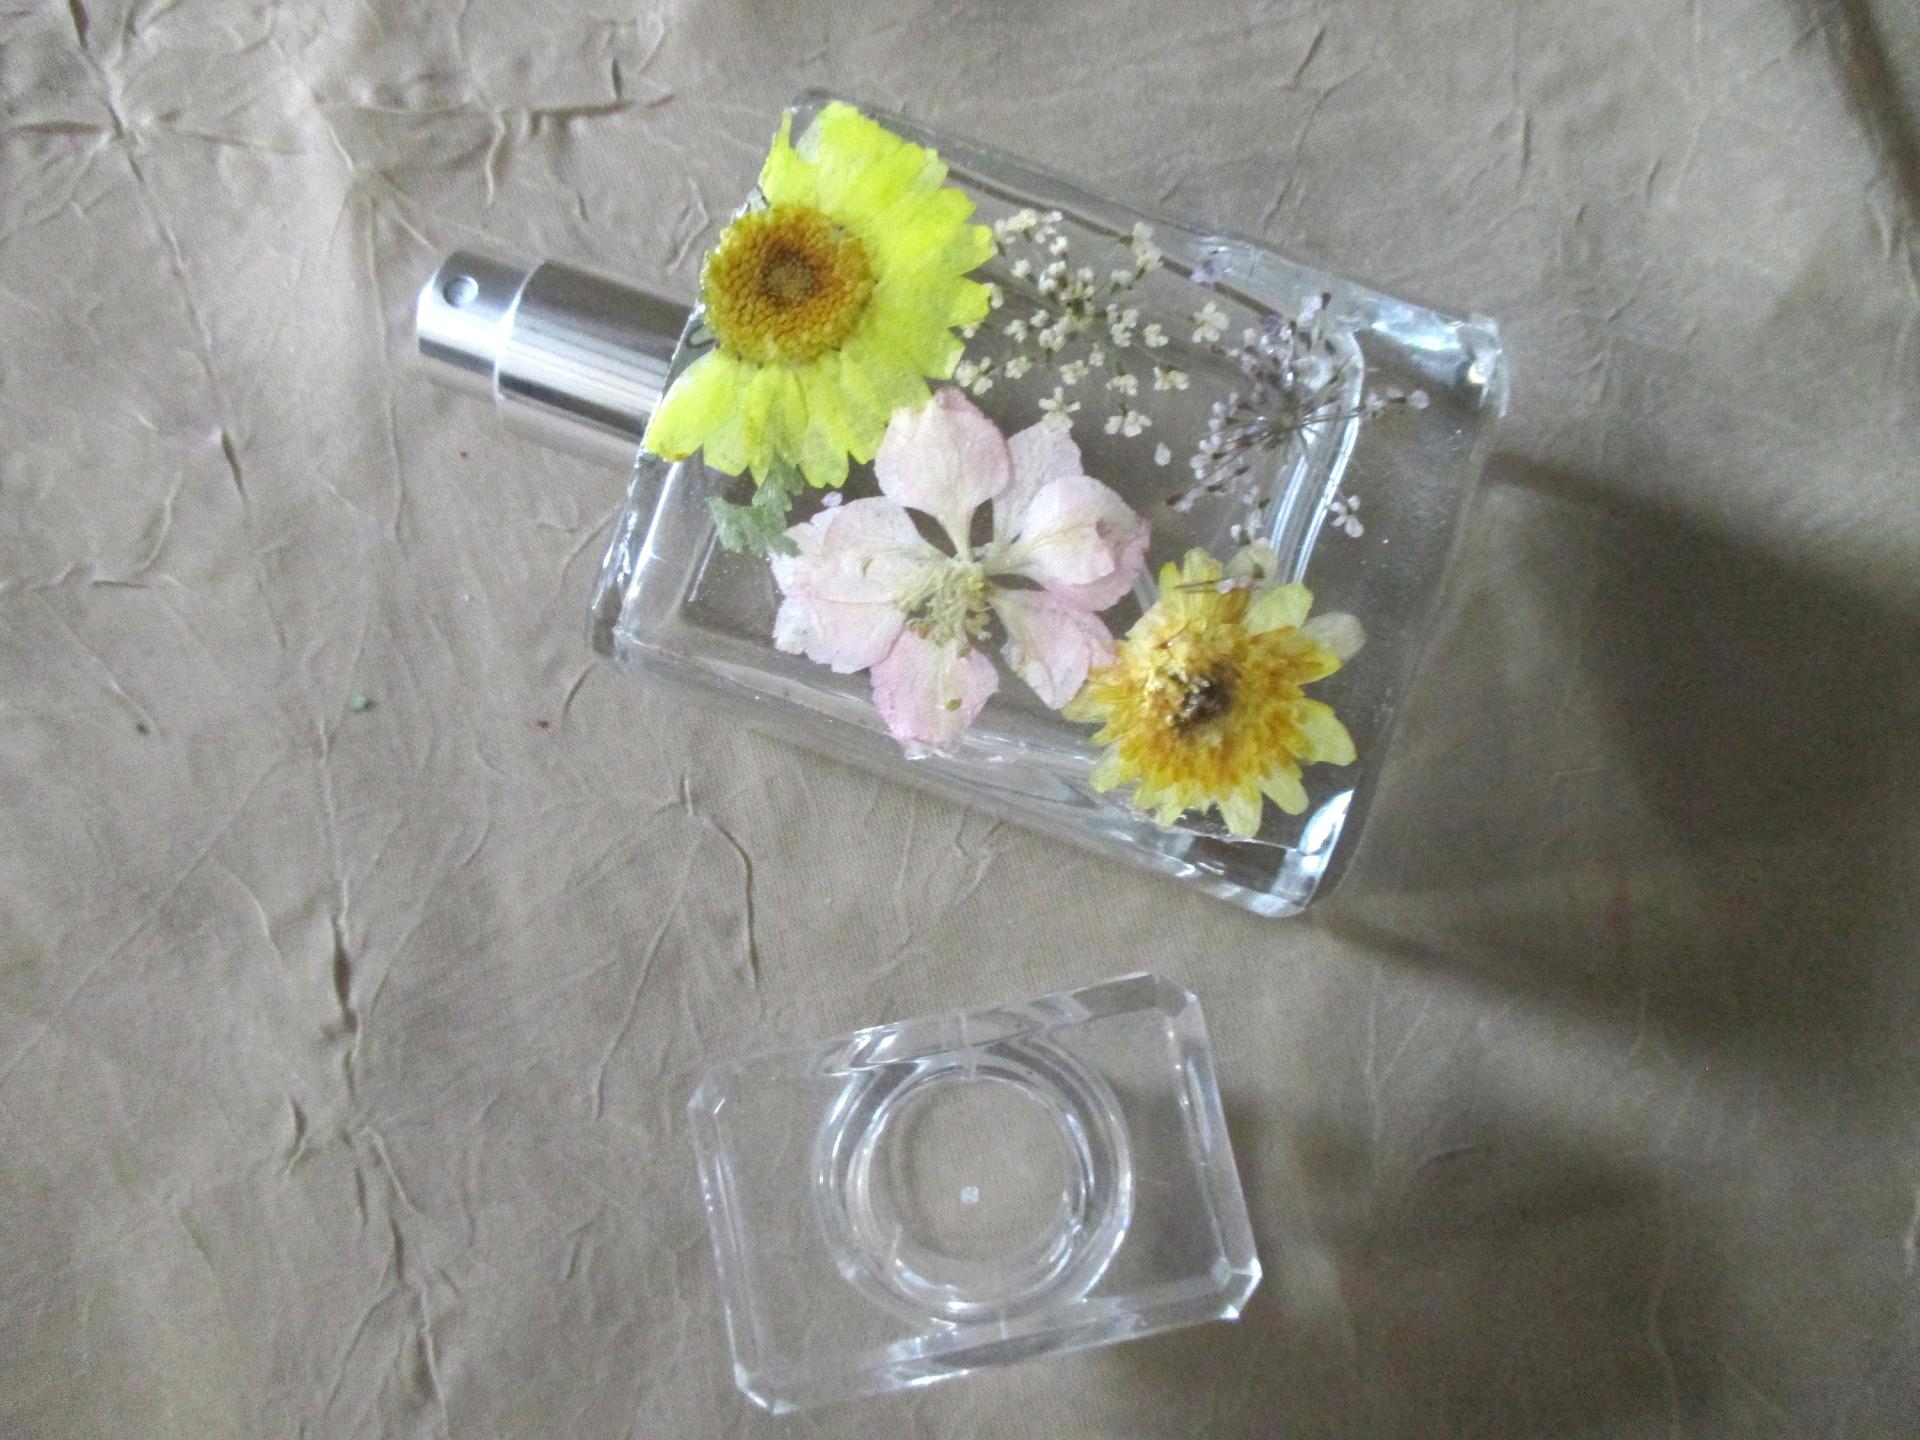 Floral Perfume Bottles, Spray Mister, 50ml Square Bottles, Flowers in Resin